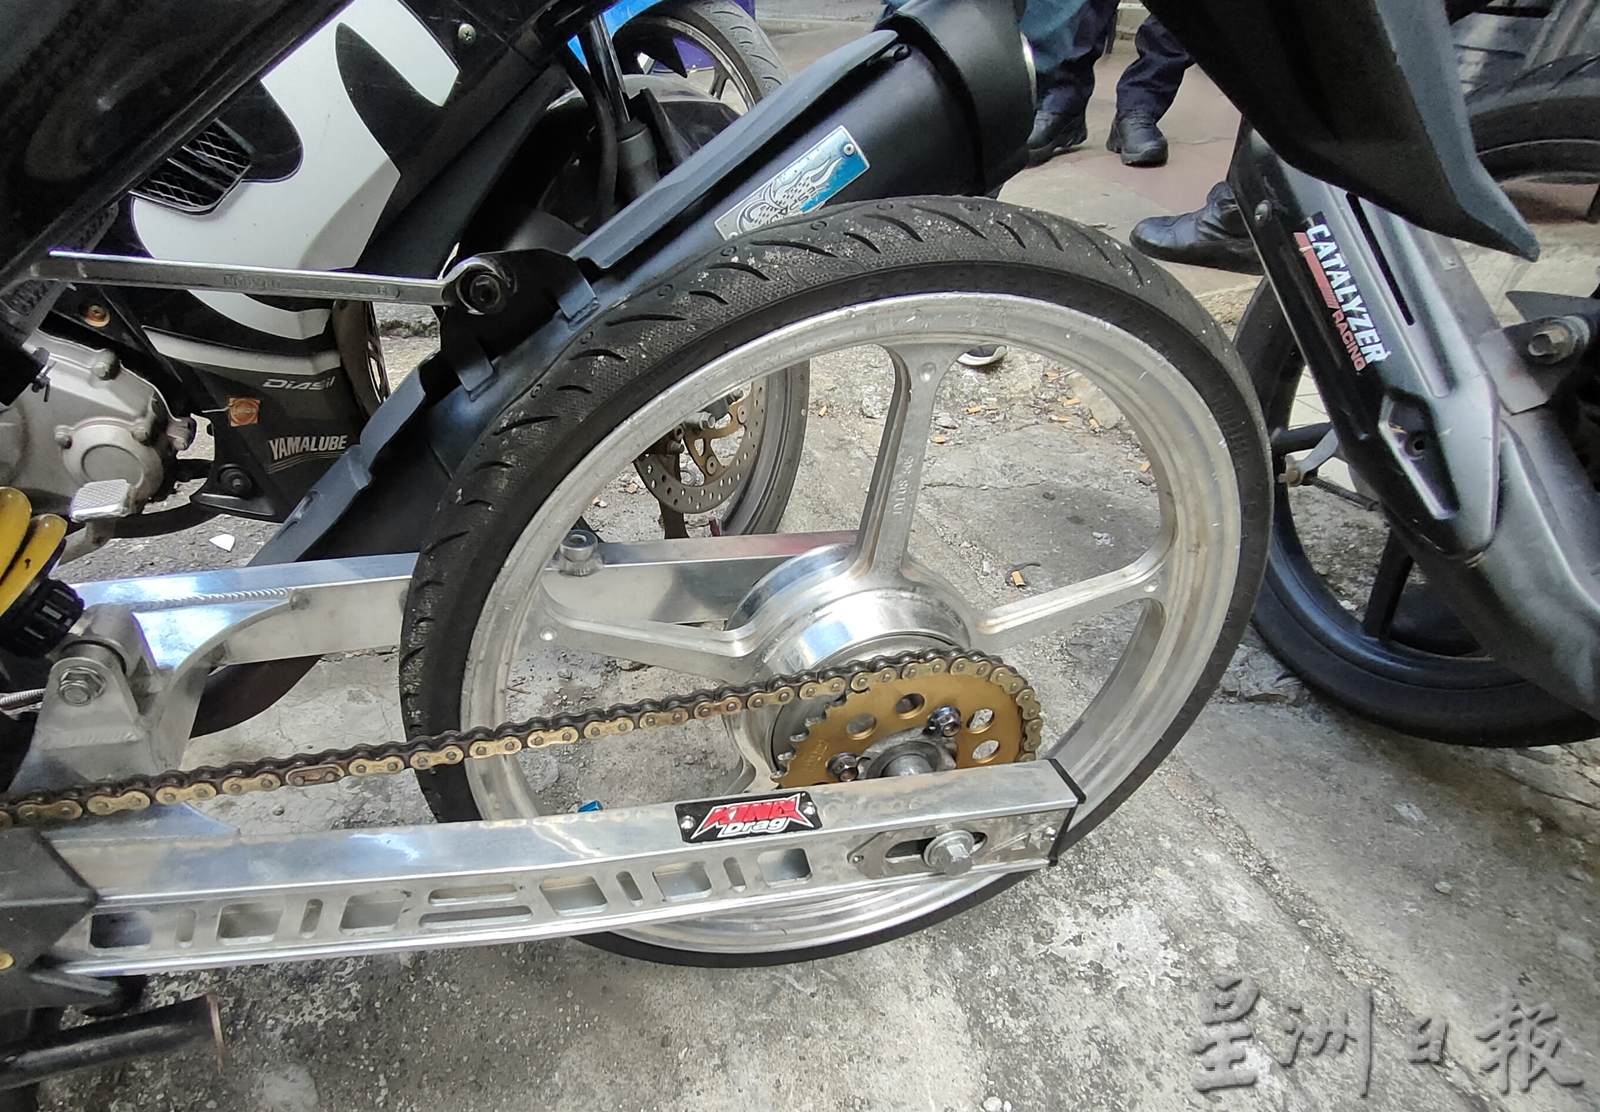 （大北马）摩托车非法改装 刹车器也拆下 26摩托车遭下令改回原装